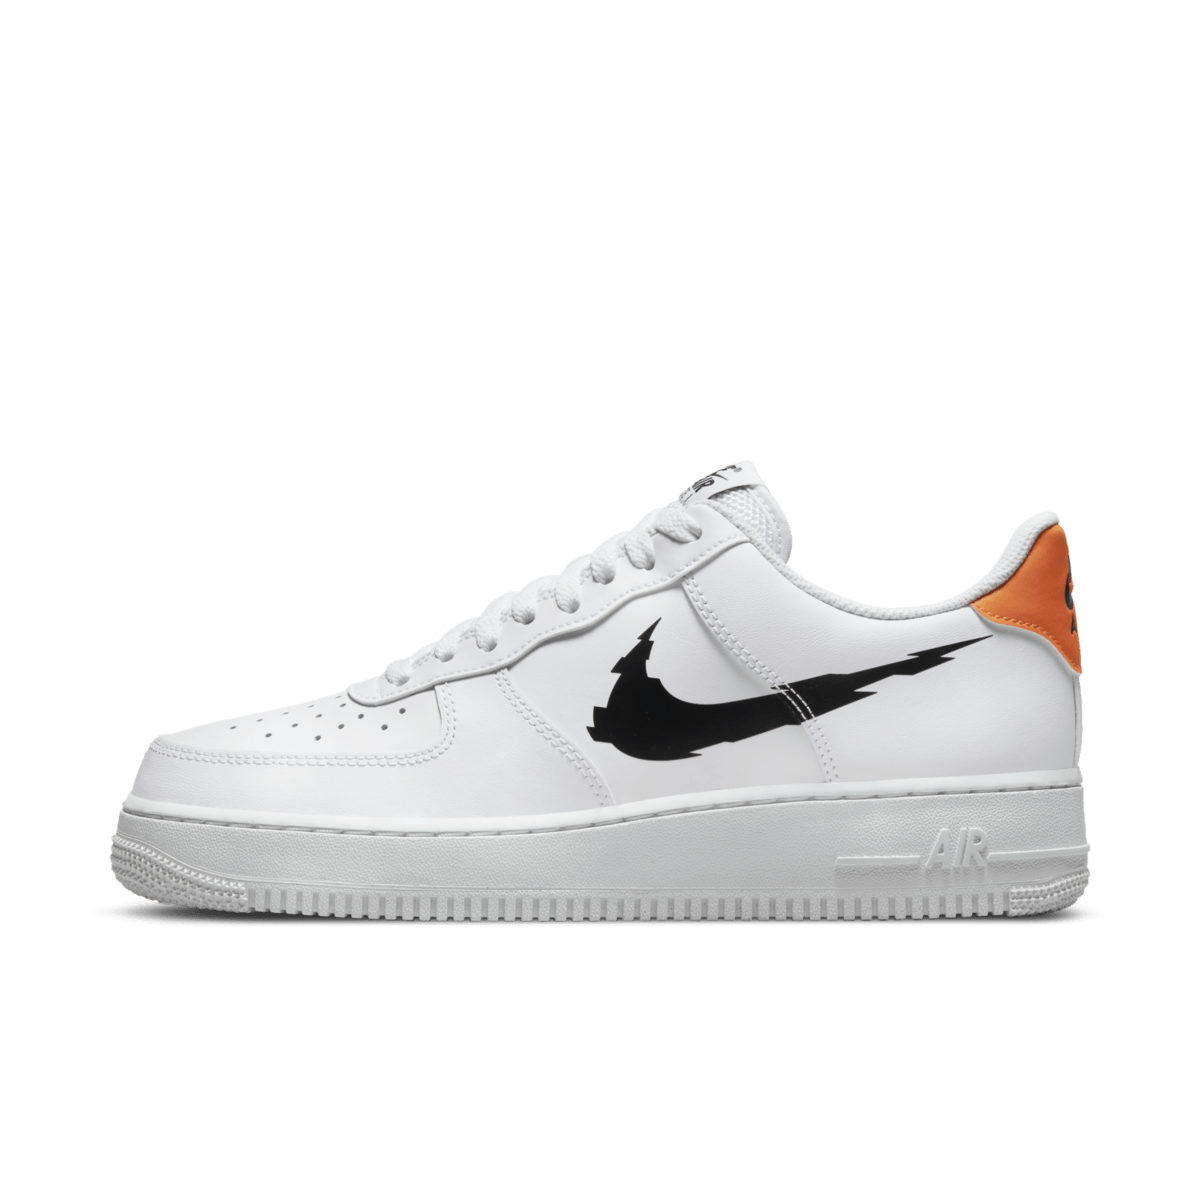 Nike Air Force 1 'White' - Glitch Swoosh DV6483-100